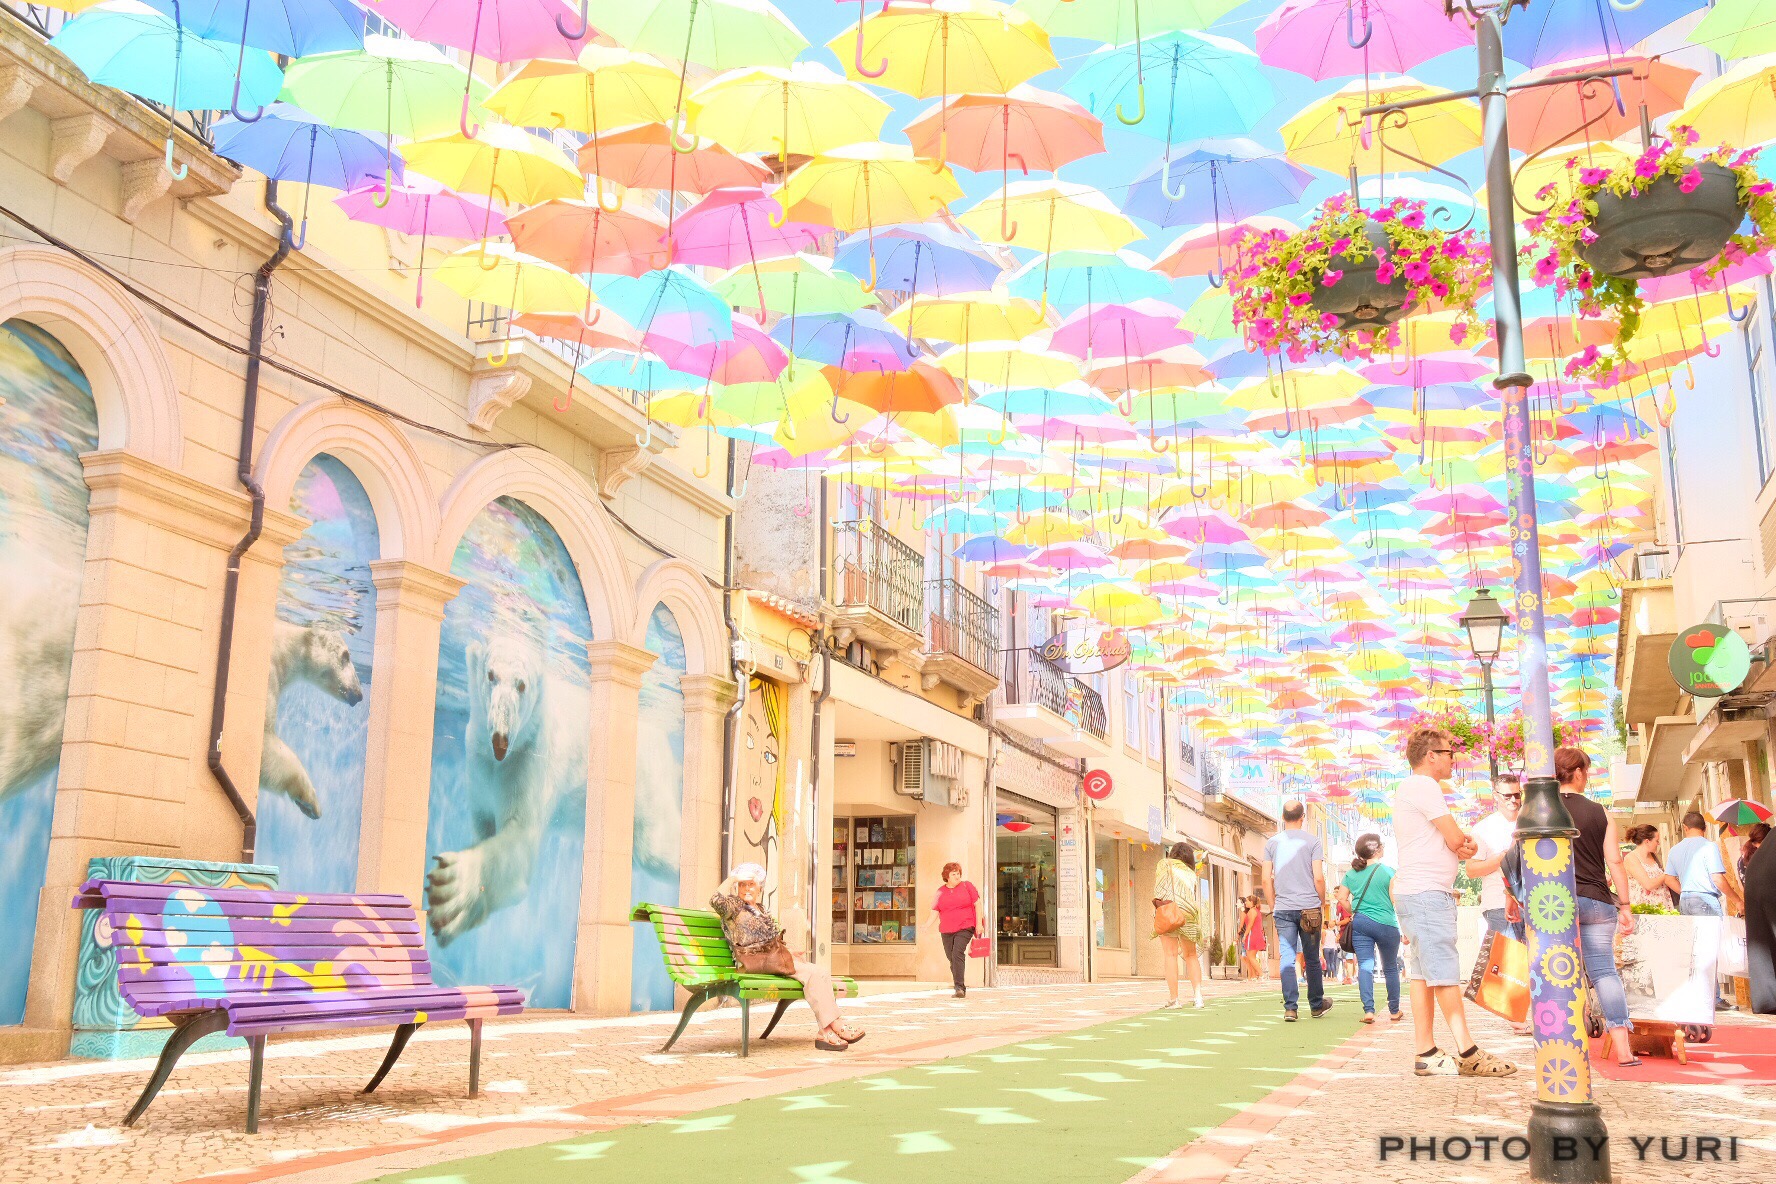 パリのブティック通りでカラフルな傘祭り La Village Royal カラフルカメラライフ